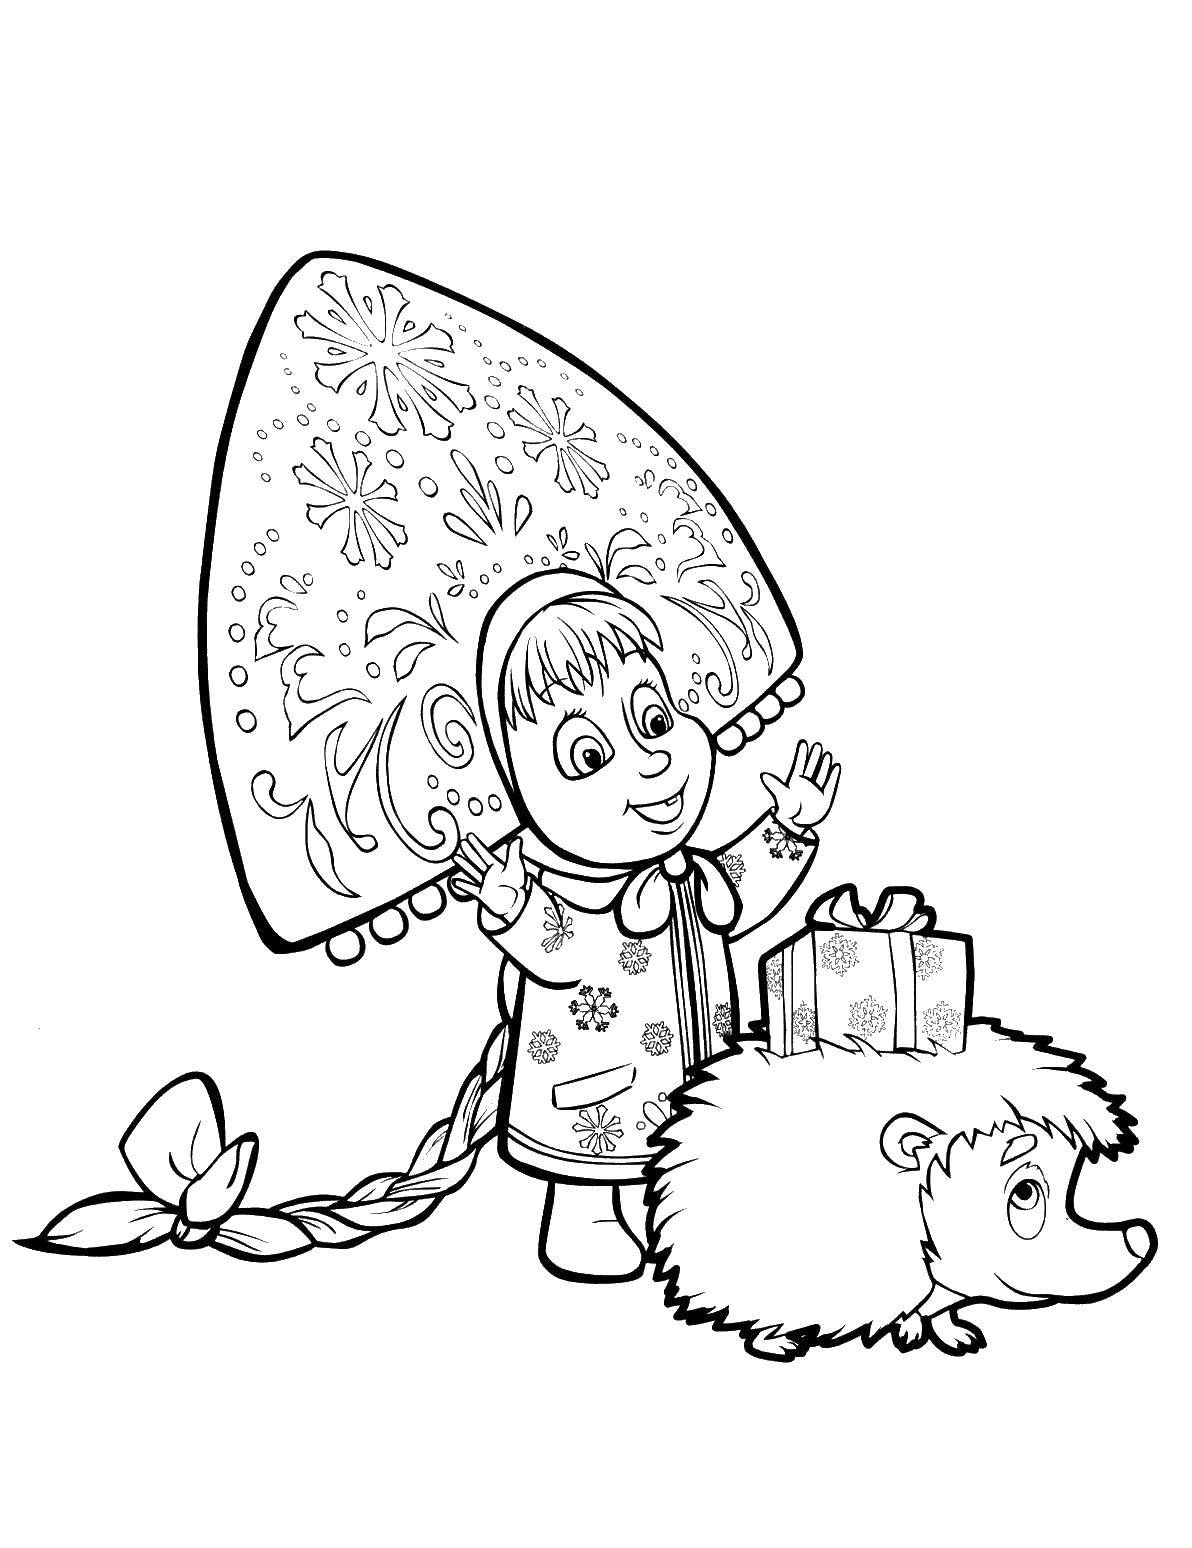 Раскраски для детей про озорную Машу из мультфильма Маша и медведь  Маша дарит подарок ежику